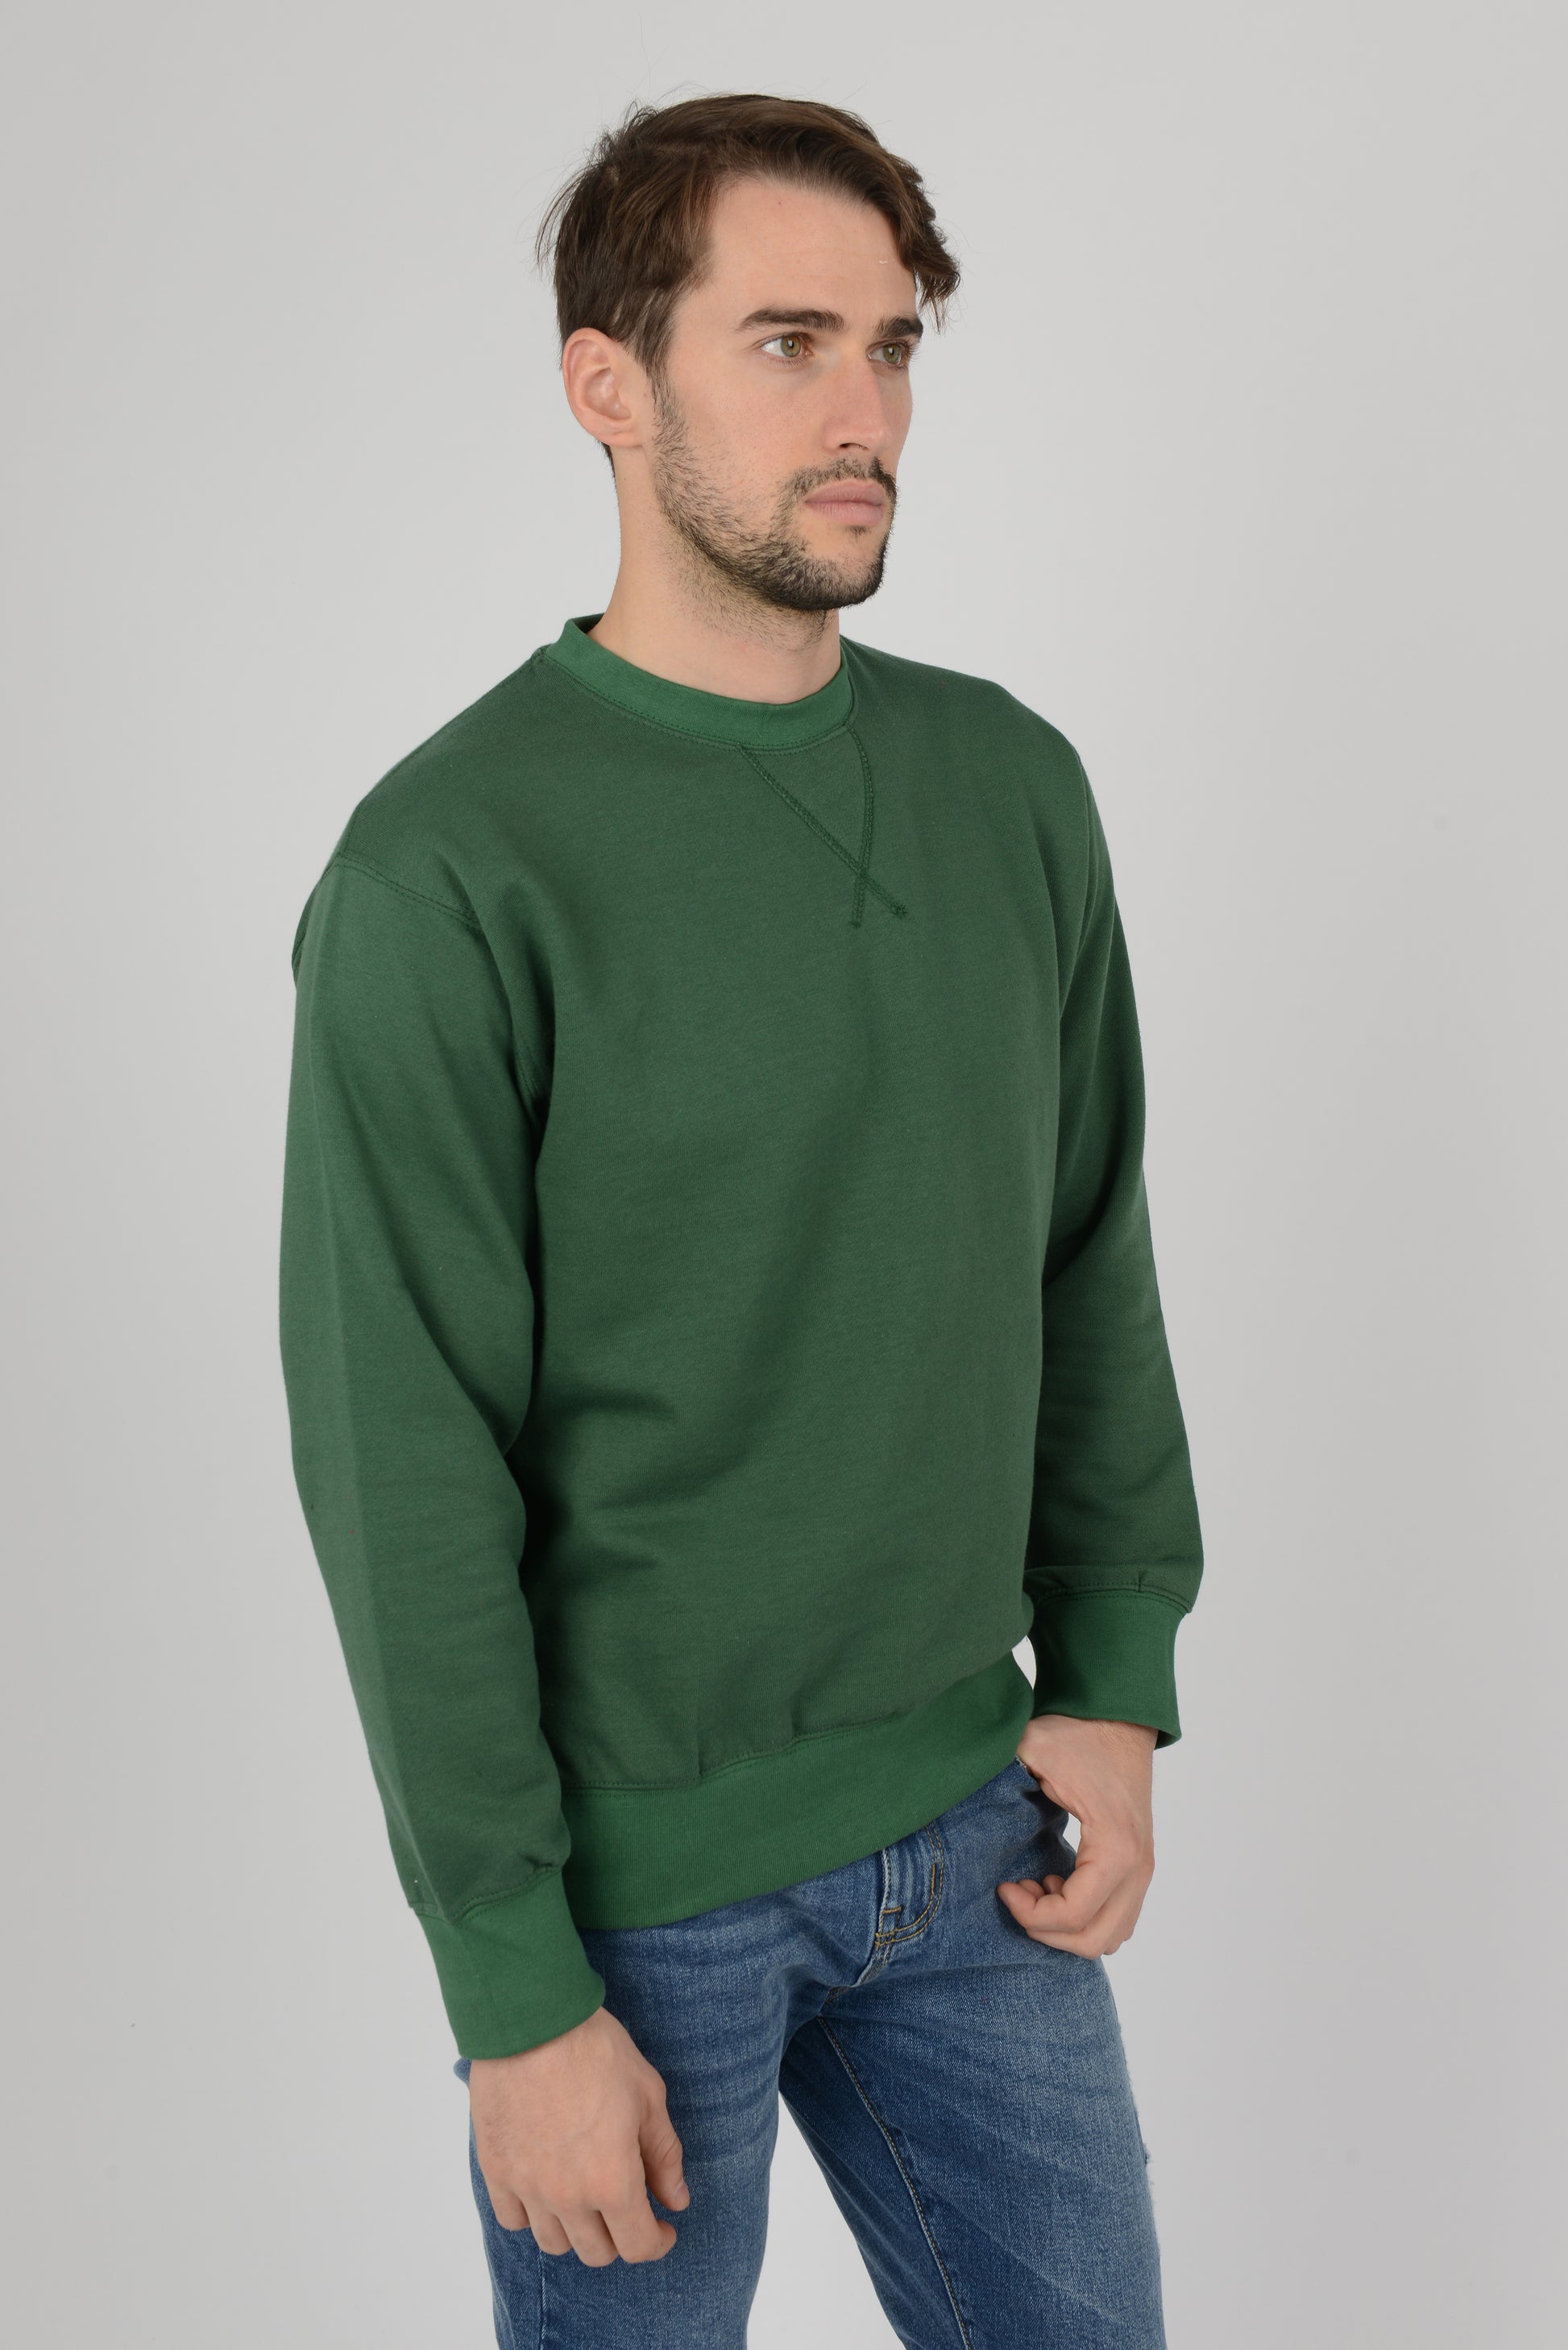 Mens-Plain-Fleece-Sweatshirt-Sweater-Bottle-Green